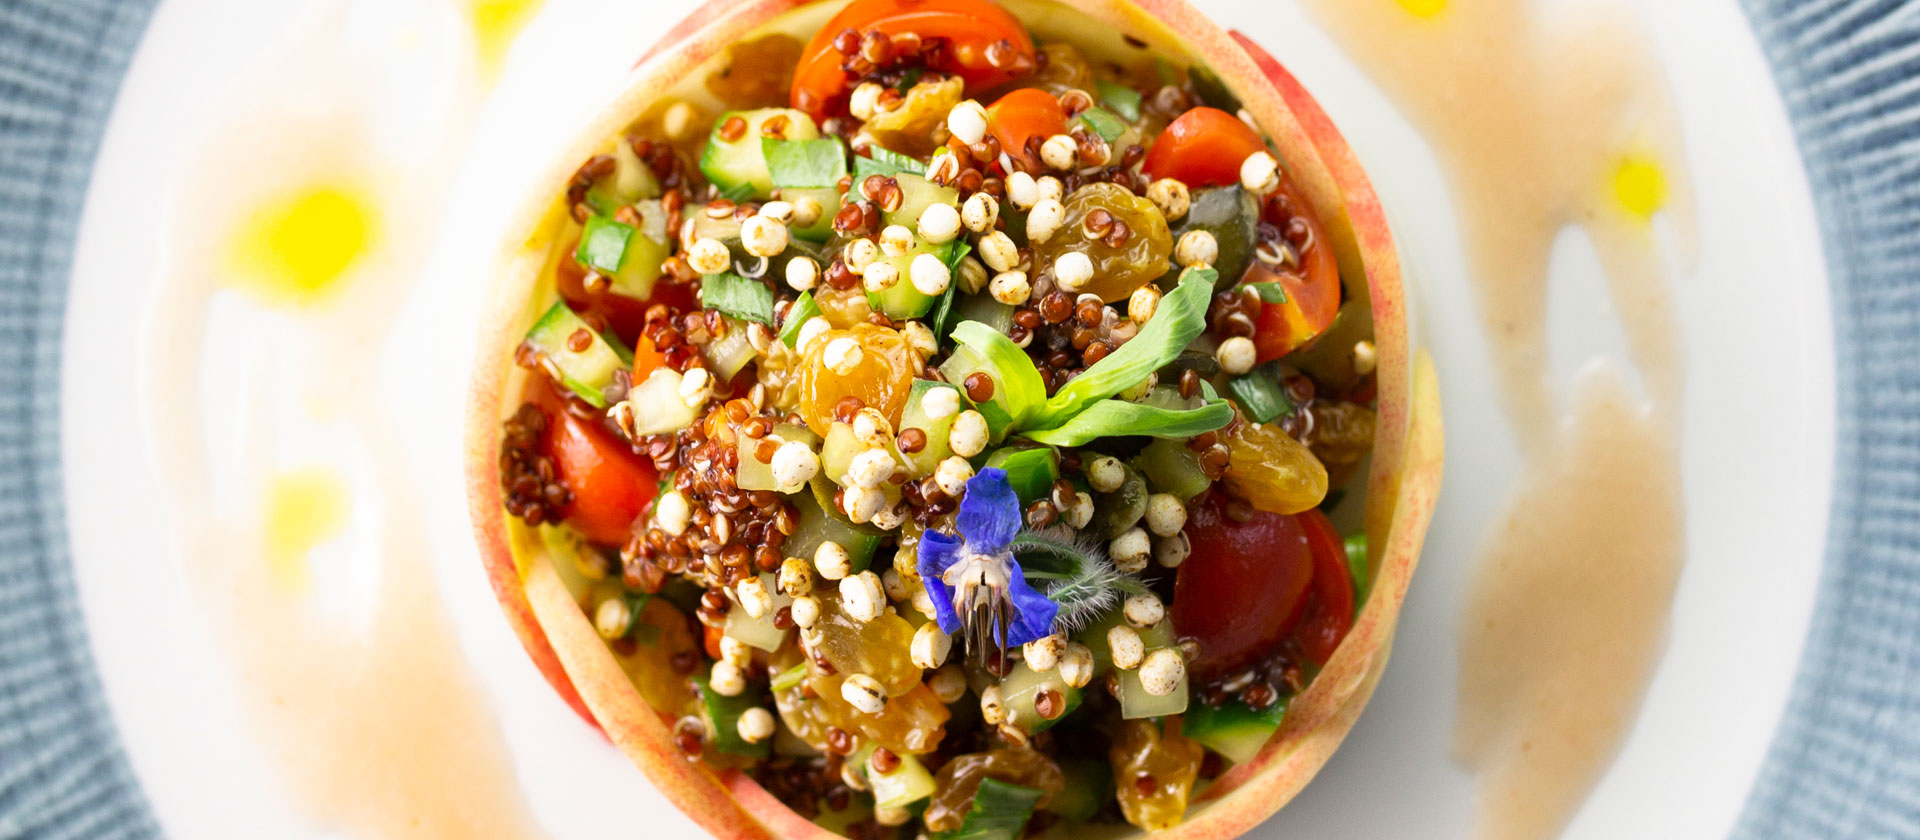 Red quinoa salad